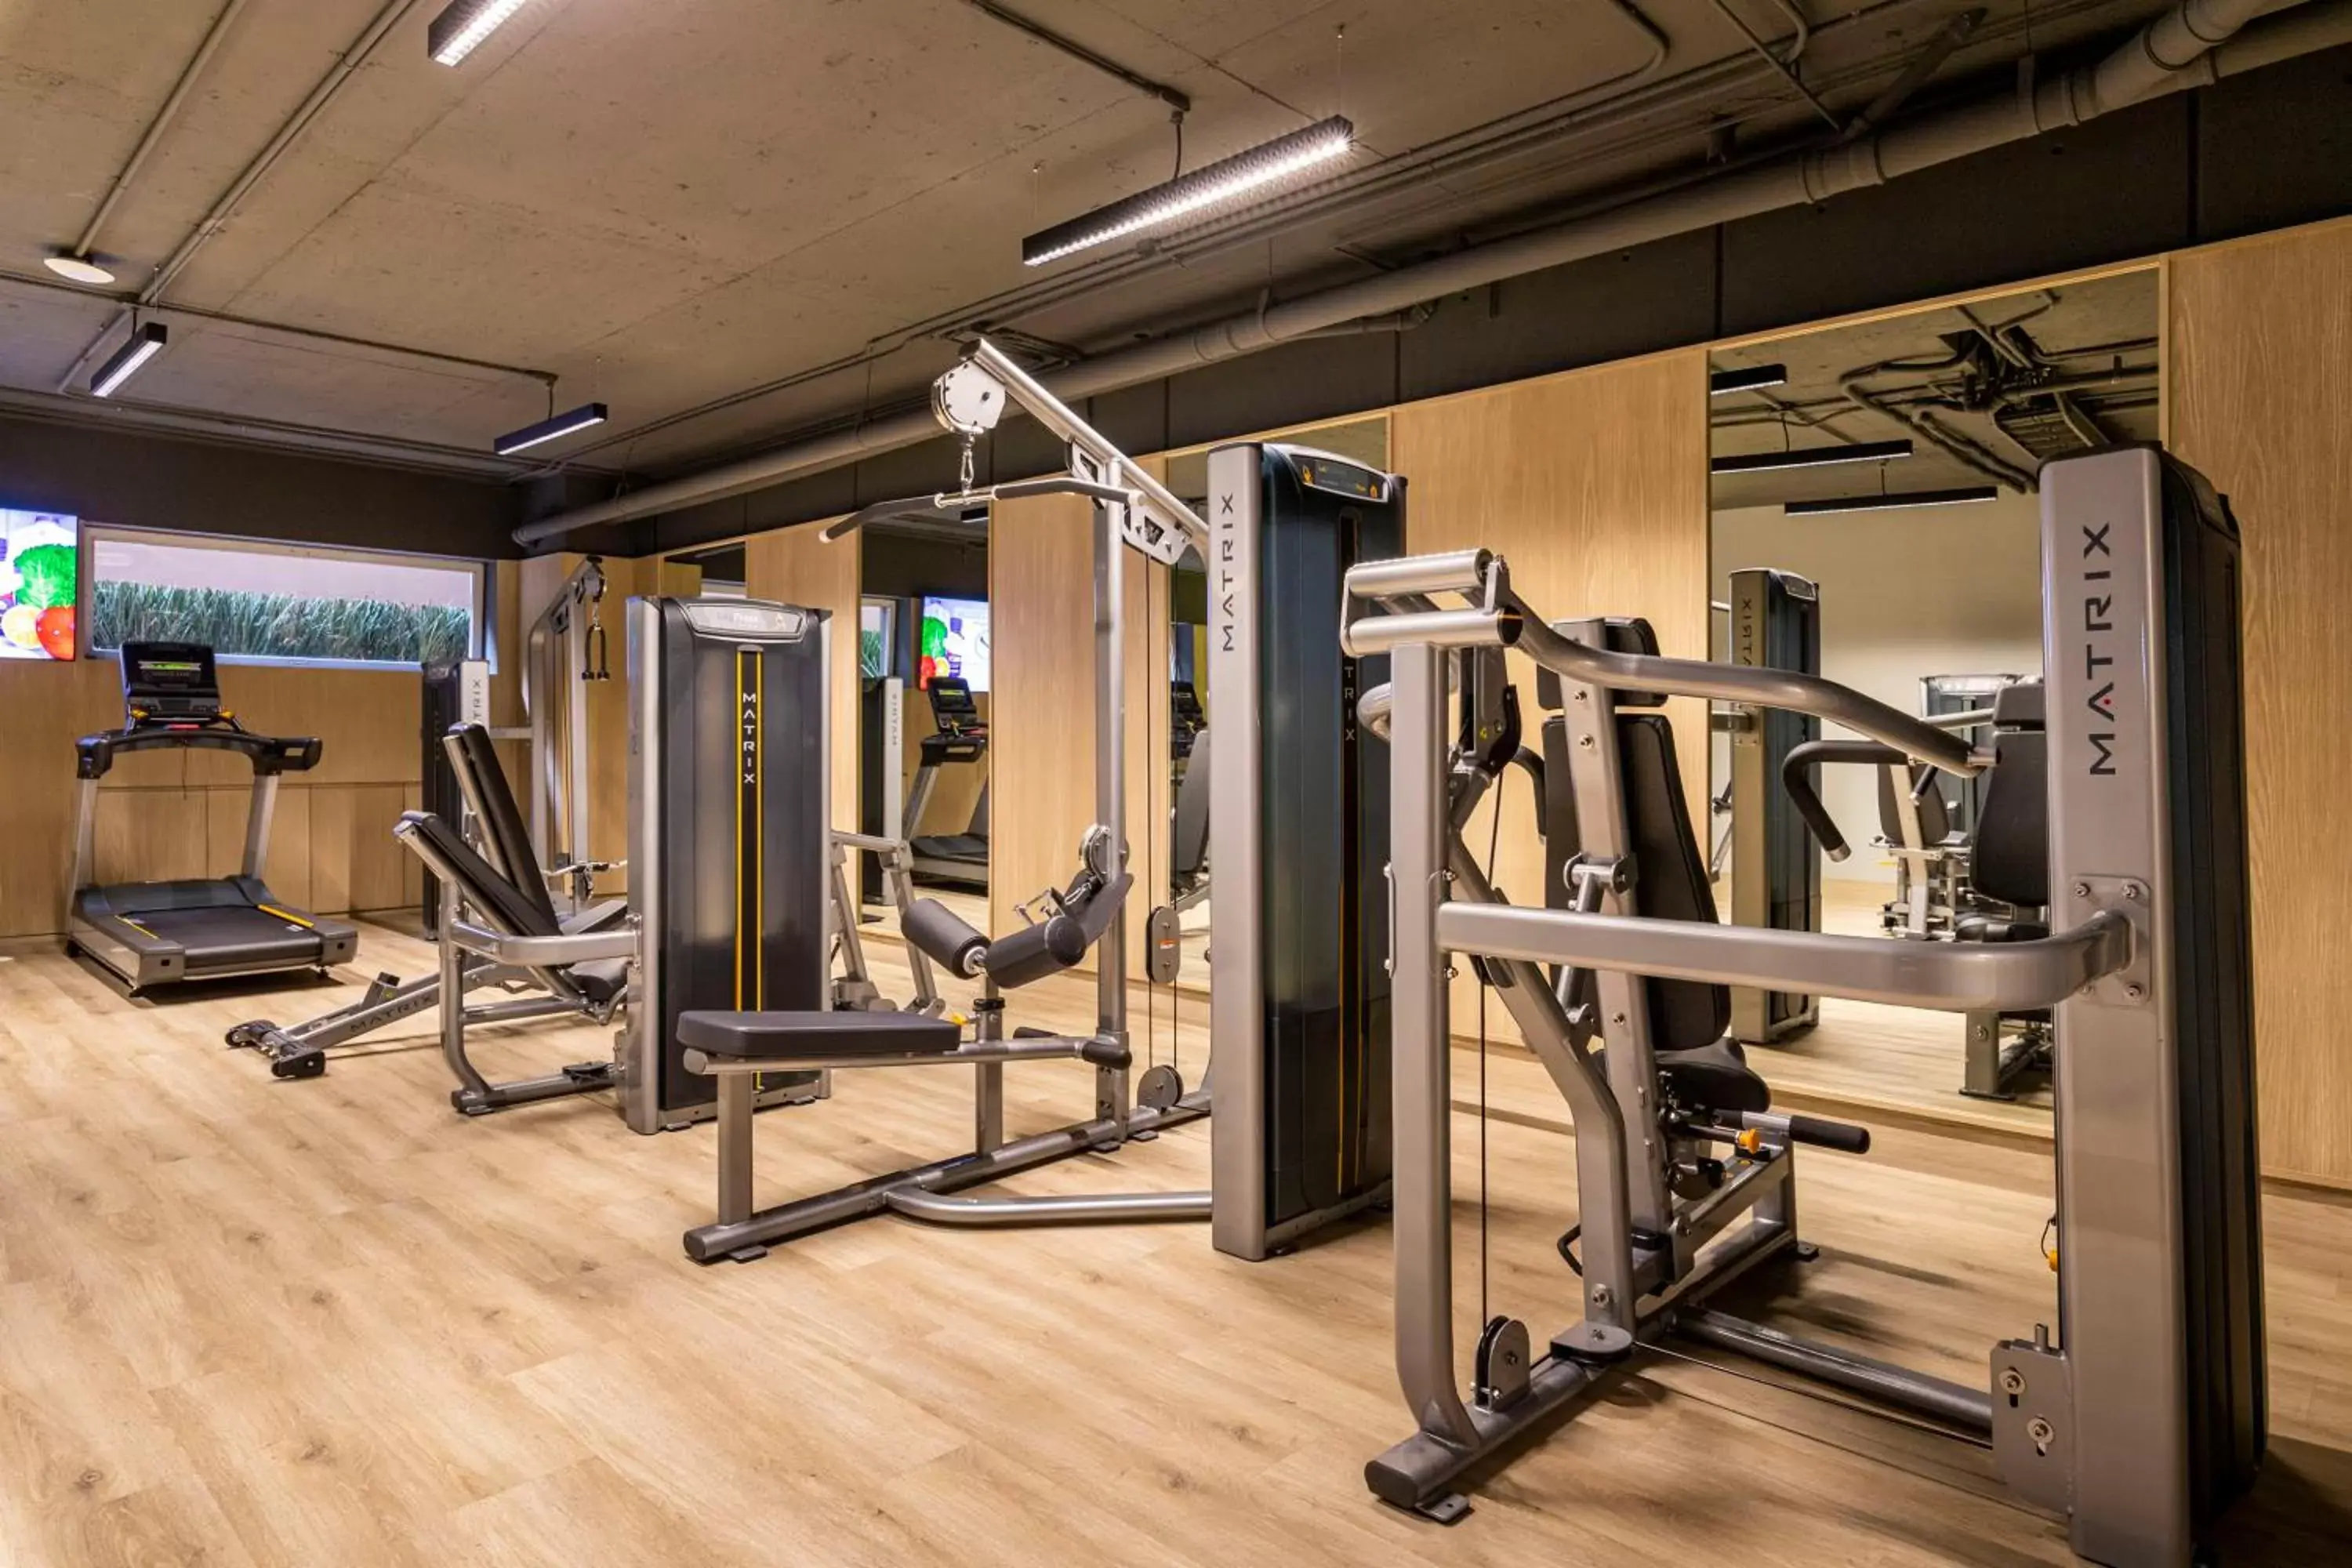 Fitness centre/facilities, Fitness Center/Facilities in Dominion Polanco